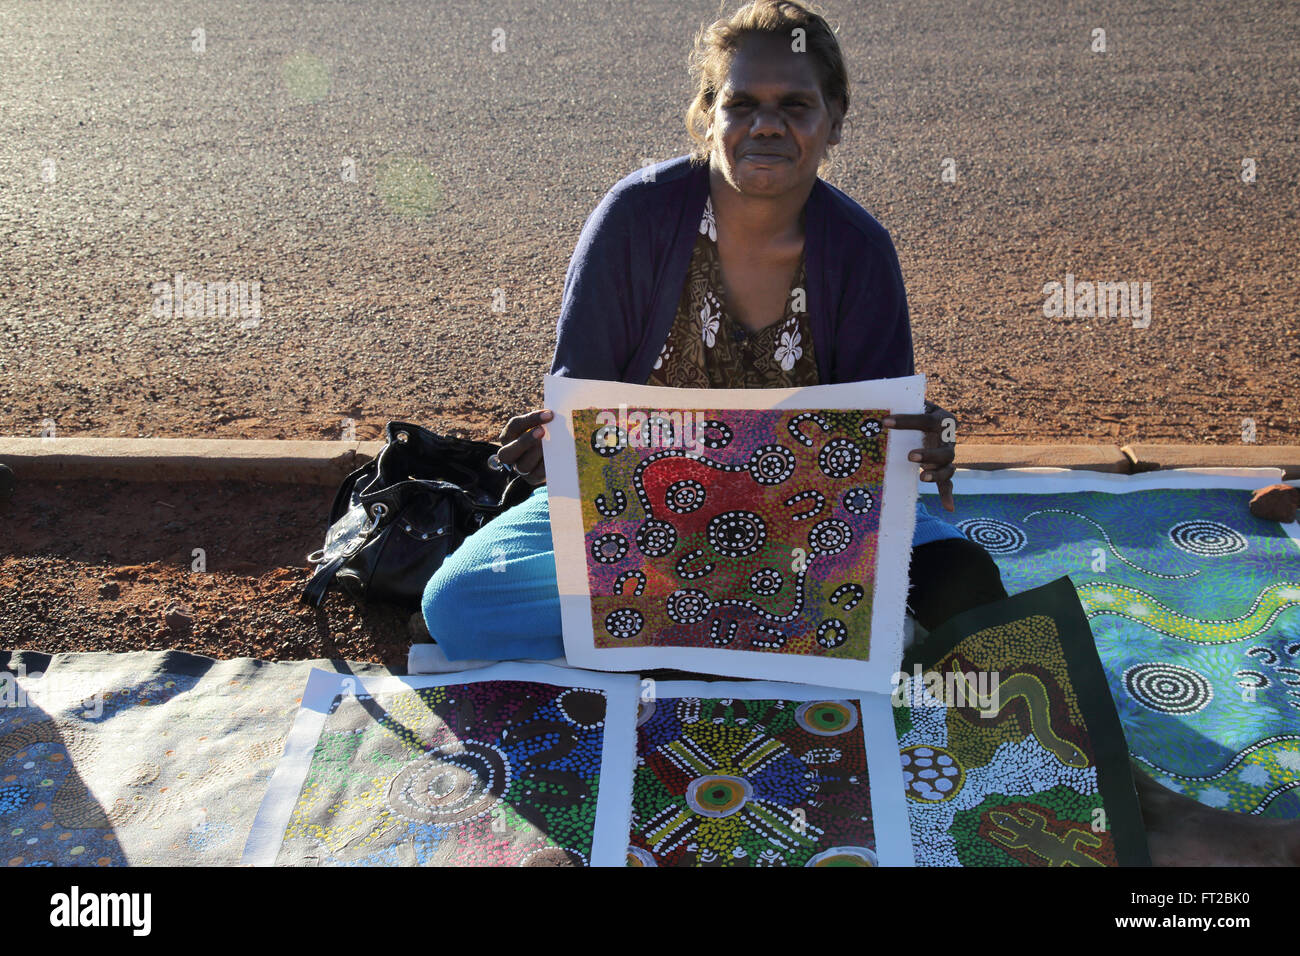 Un artiste aborigène jean brumby afficher ses peintures à Uluru dans le centre rouge de l'Australie Banque D'Images